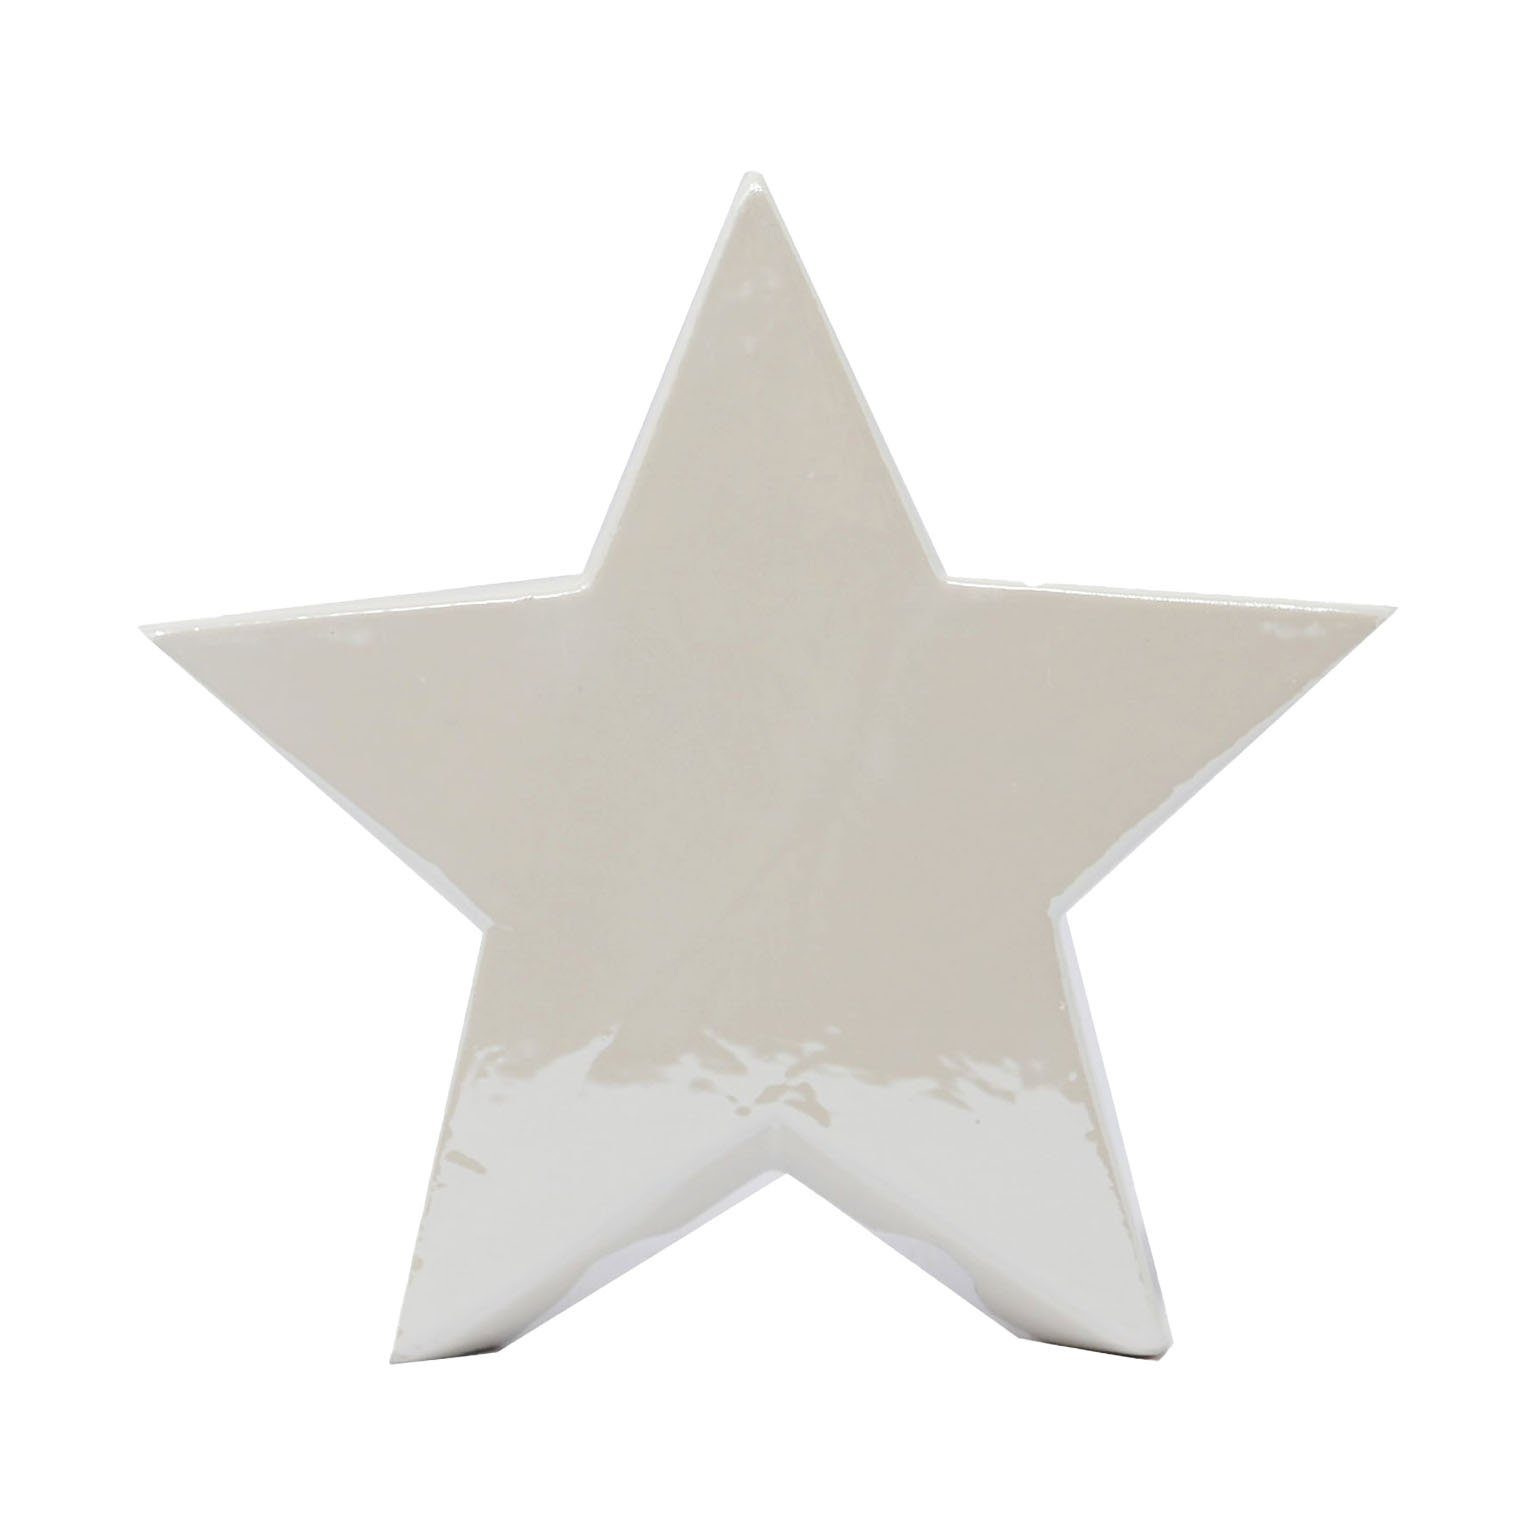 B&S Dekofigur Stern in weiß aus Keramik 12 cm